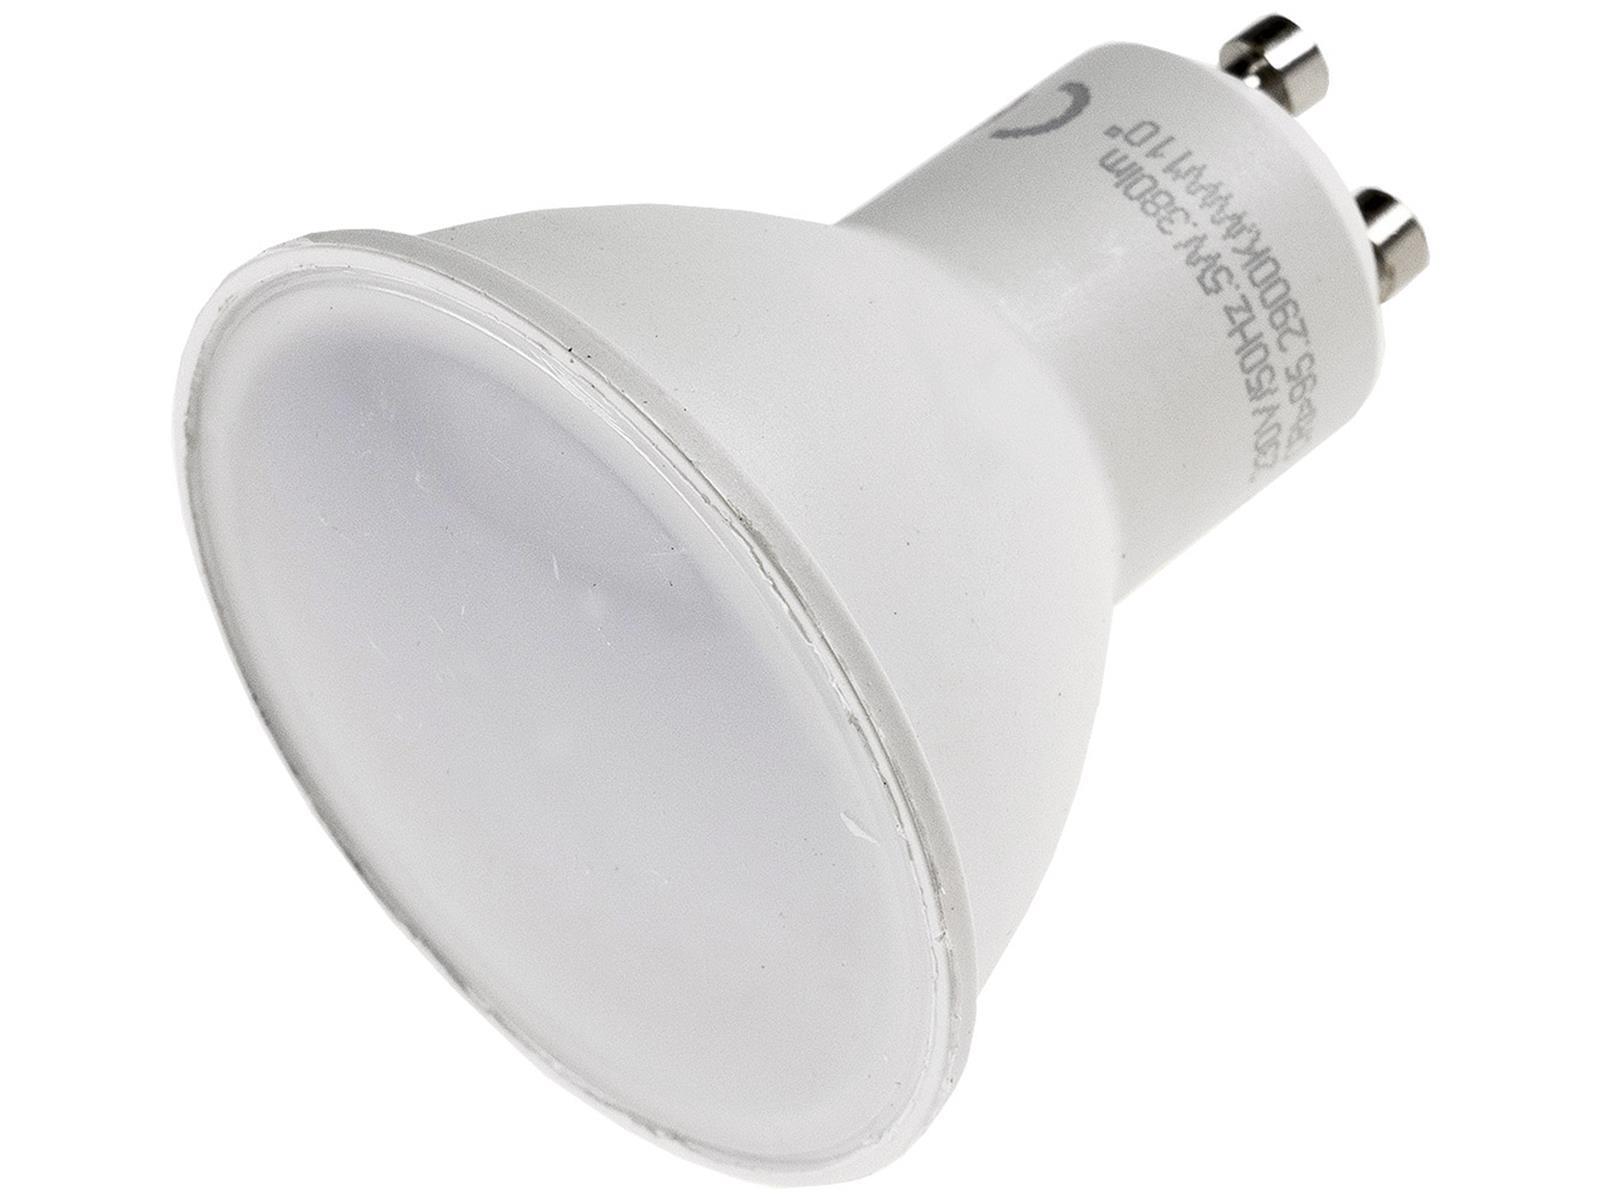 LED Strahler GU10 "H50" 3-Stufen-Dimmbar 2900k, 420lm, 230V/5W, 110°, warmweiß